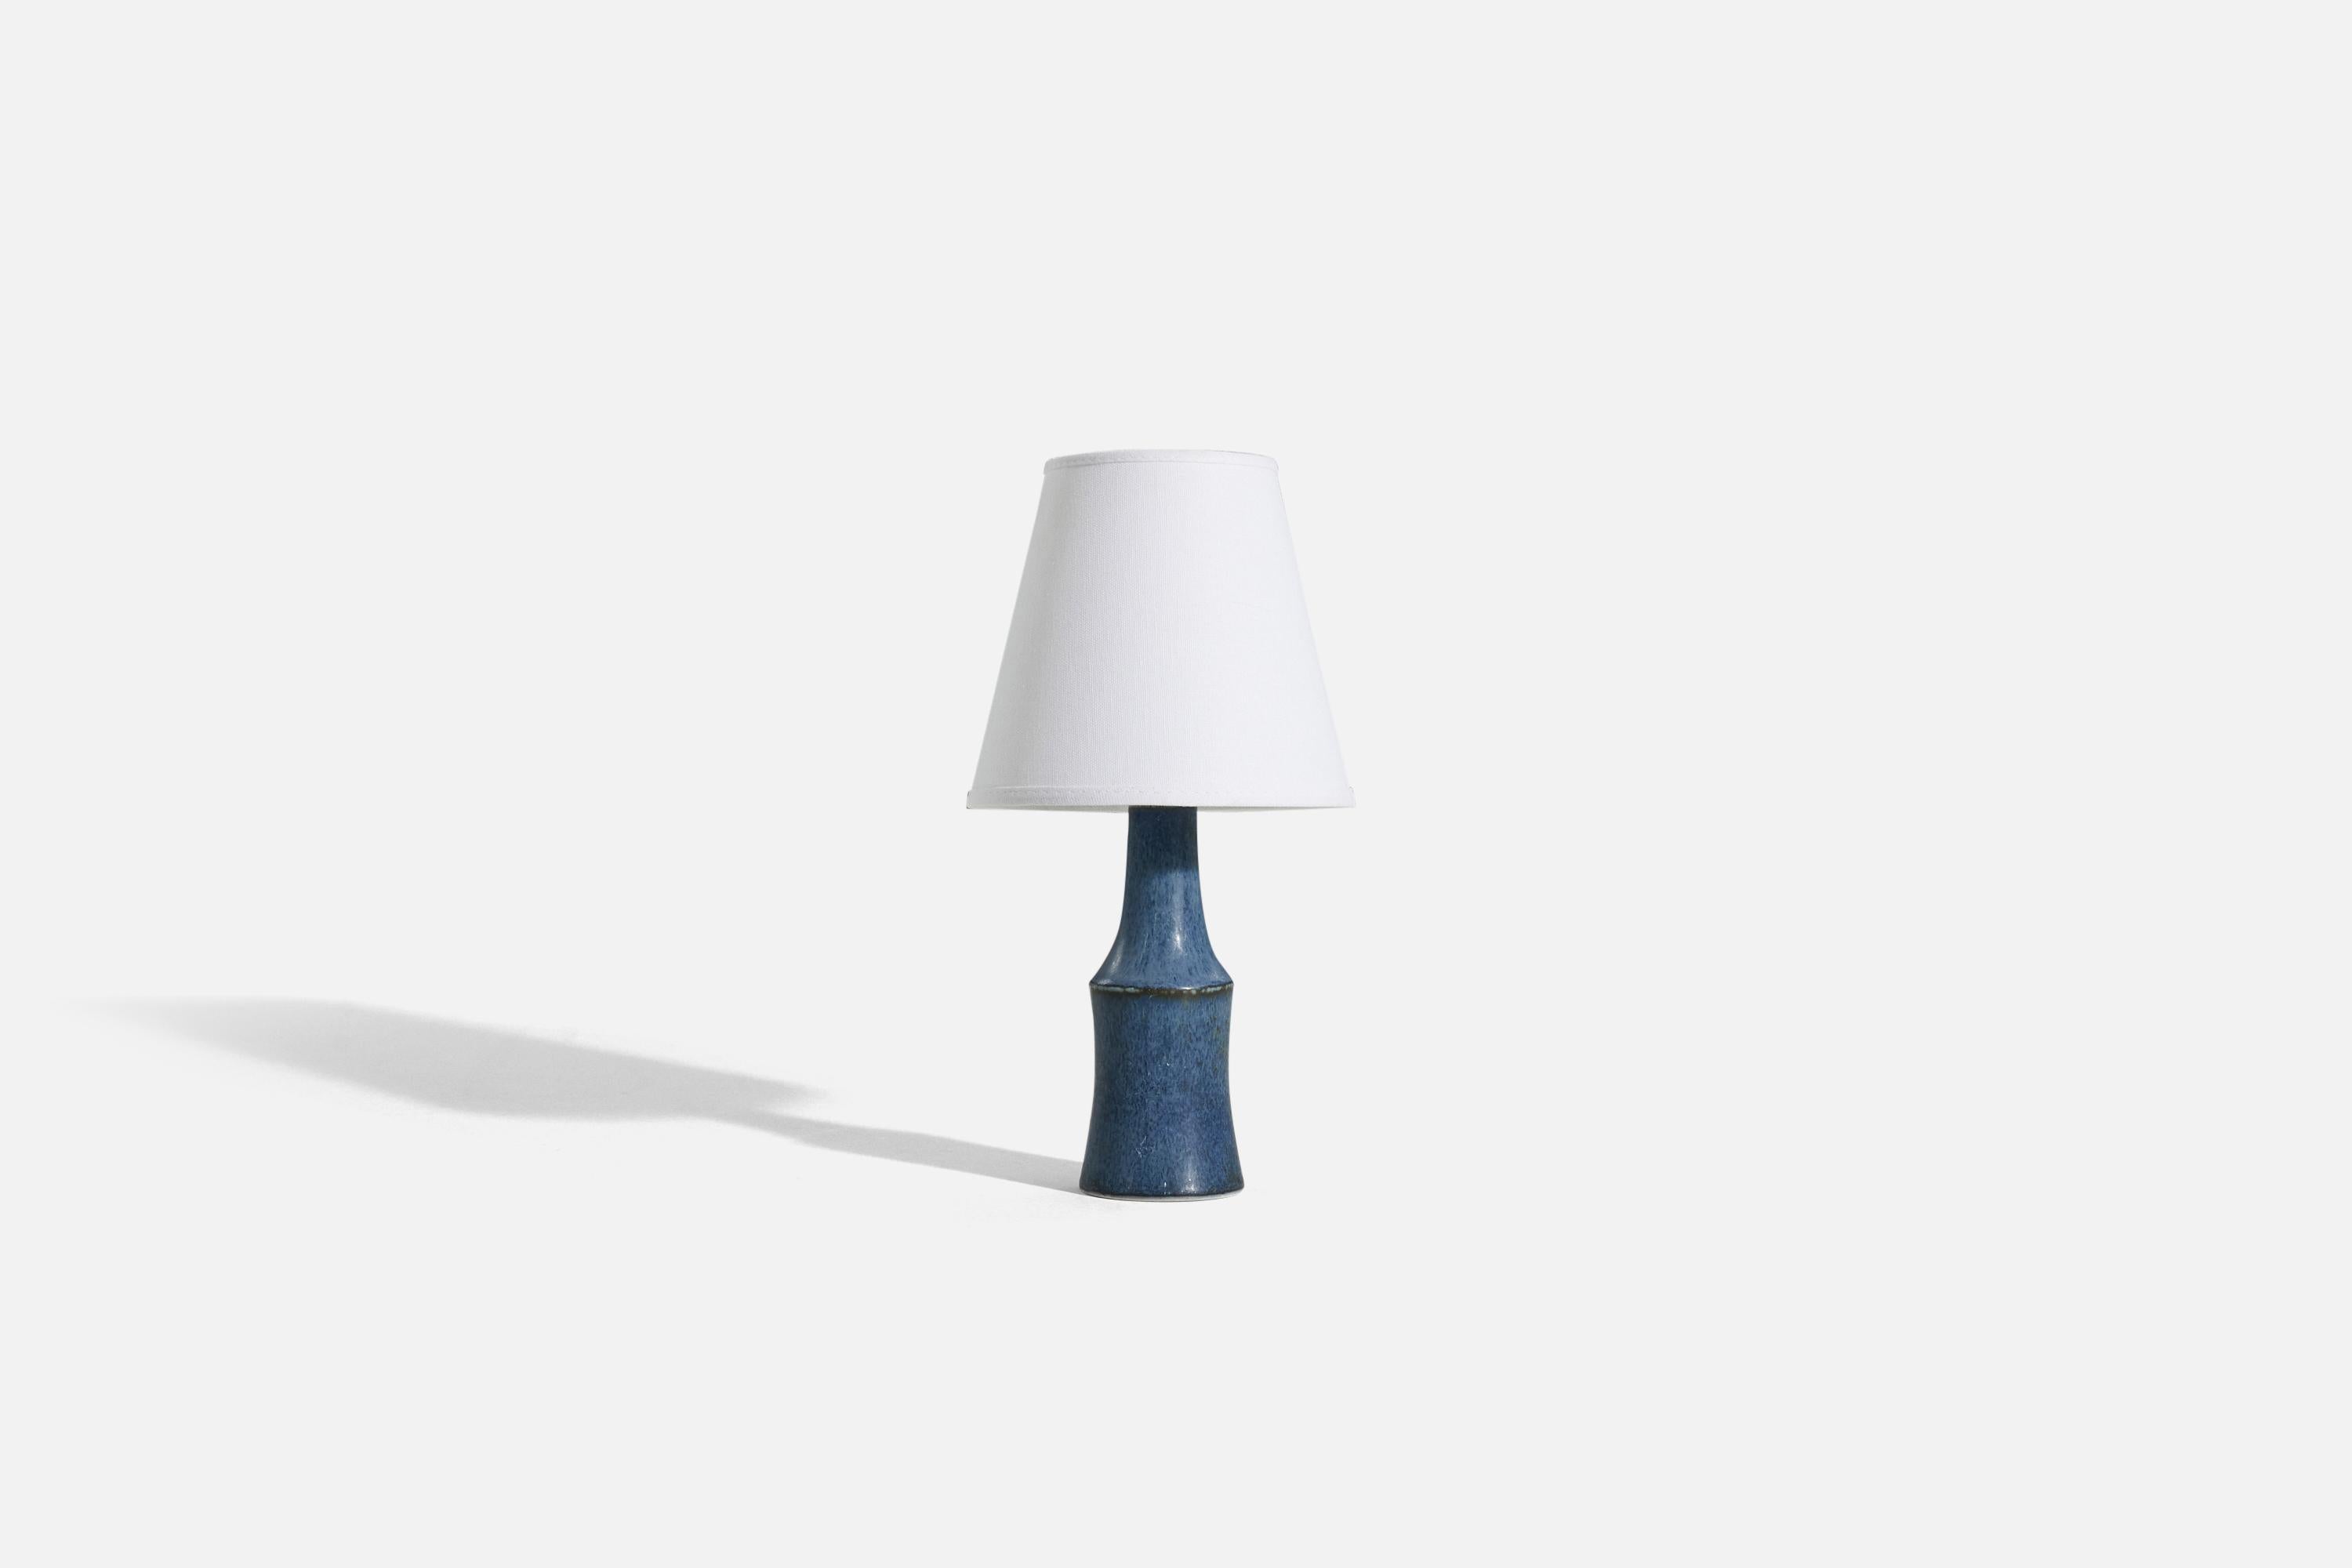 Lampe de table en grès émaillé bleu, conçue par Carl-Harry Stålhane et produite par Rörstrand, Suède, années 1960. 

Vendu sans abat-jour. 
Dimensions de la lampe (pouces) : 9.125 x 2,9375 x 2,9375 (H x L x P)
Dimensions de l'abat-jour (pouces) : 4